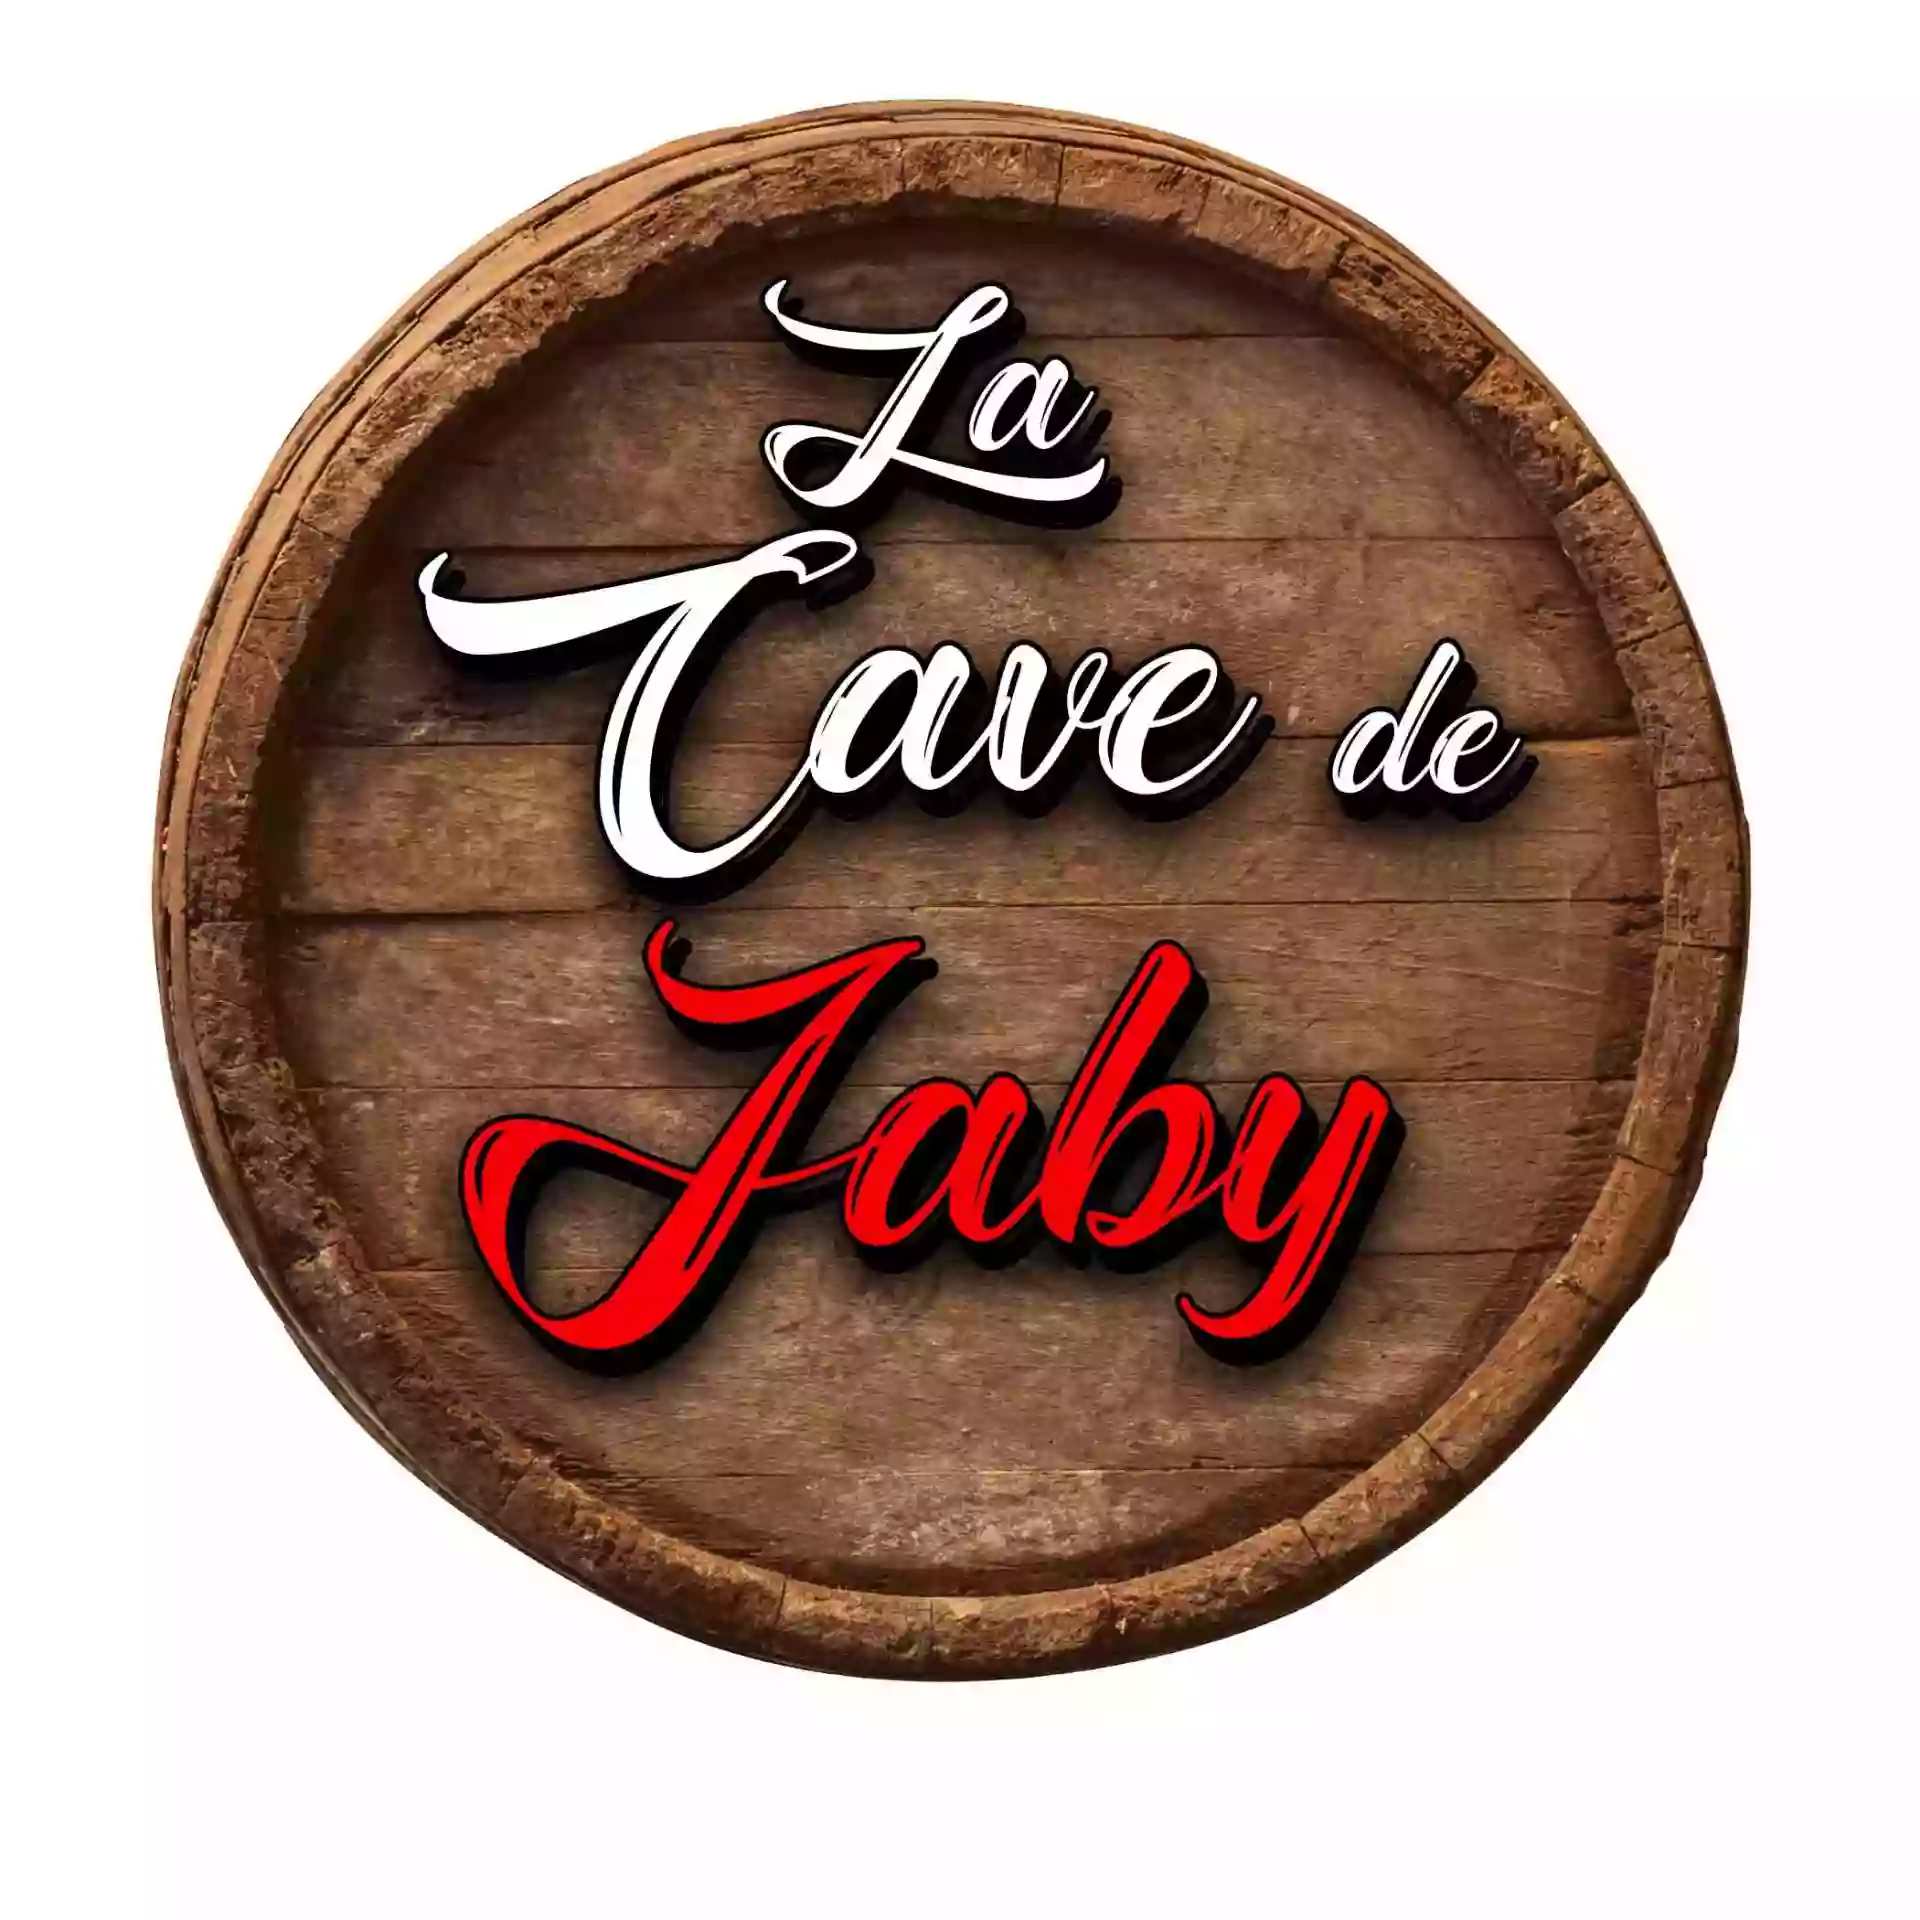 LA CAVE DE JABY